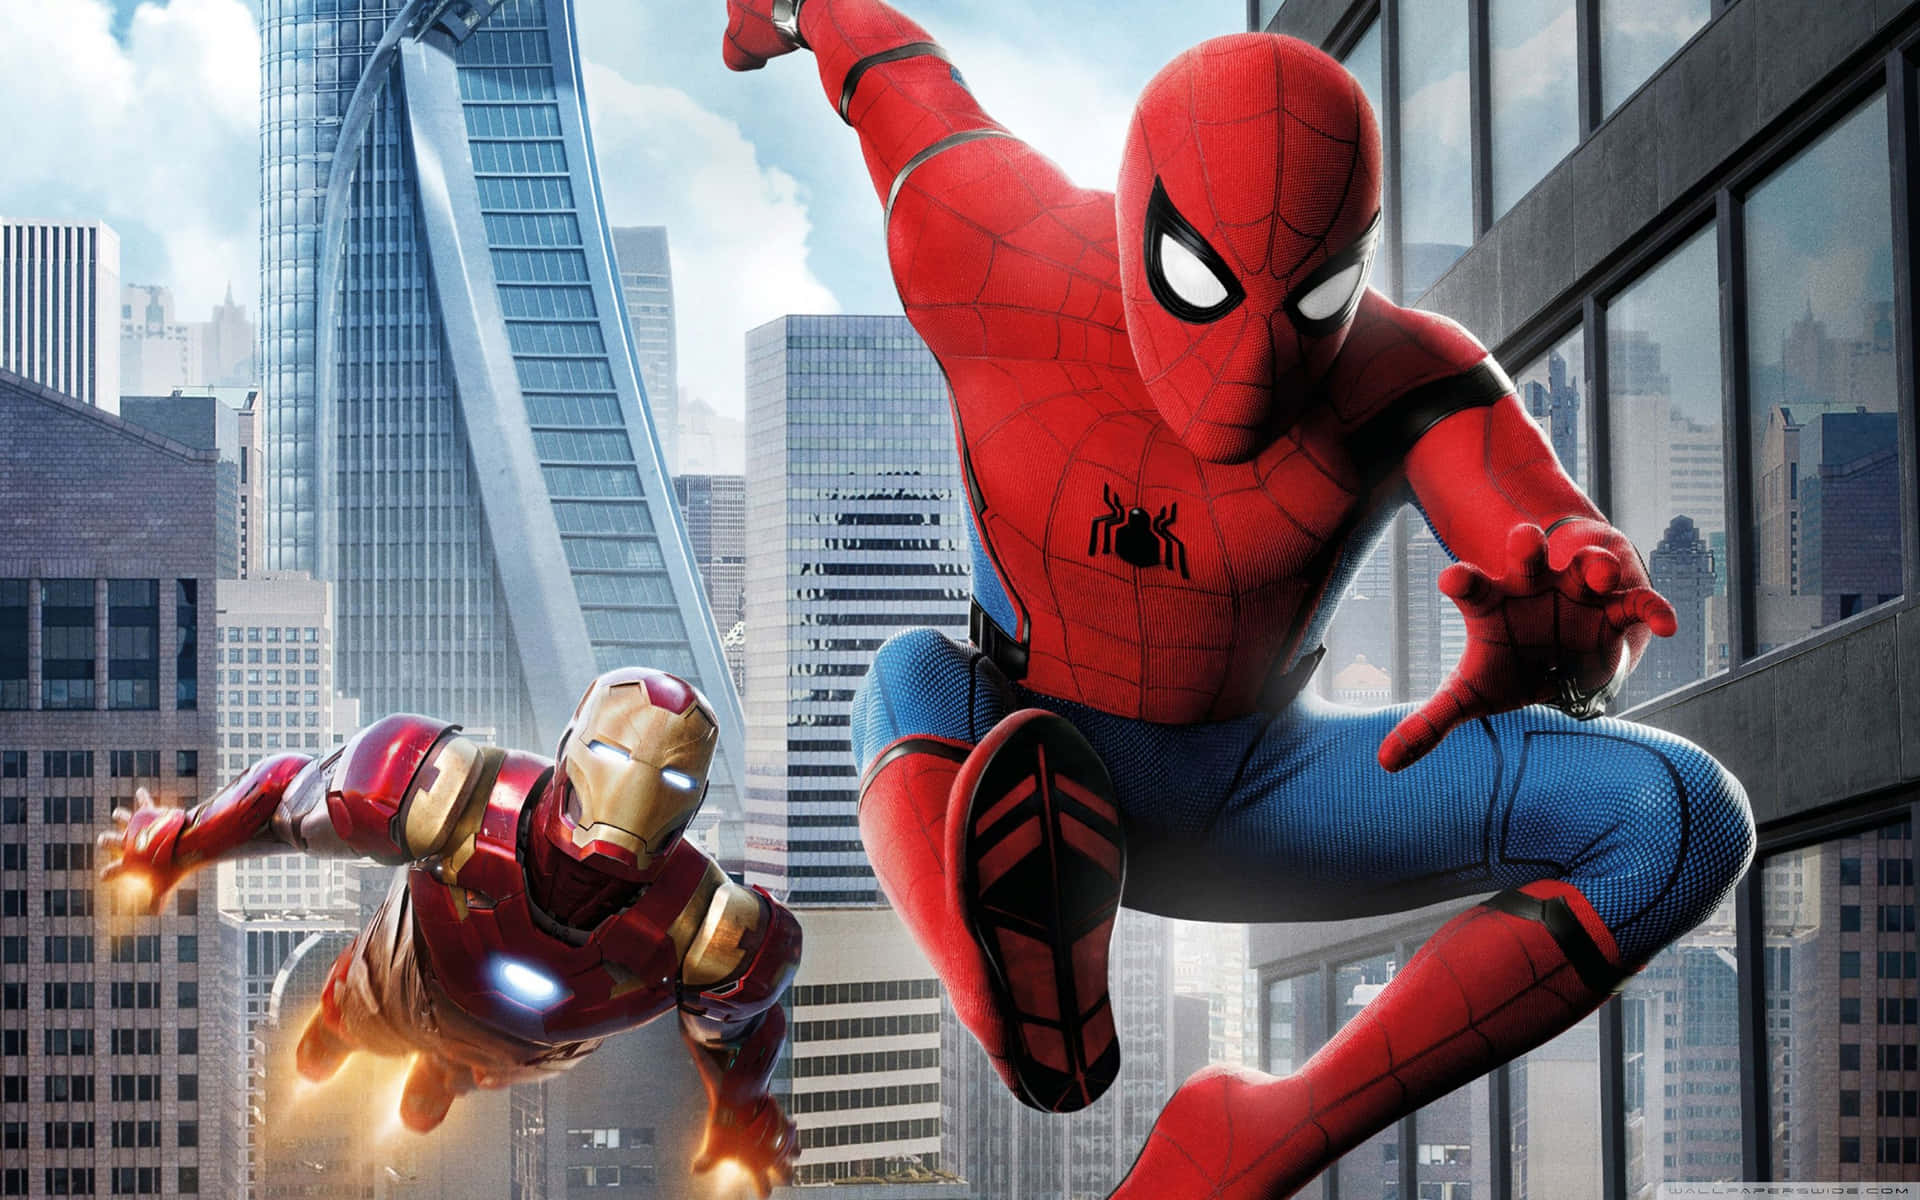 Spiderman Och Iron Man, Två Ikoniska Superhjältar, Möts I En Episk Strid. Wallpaper